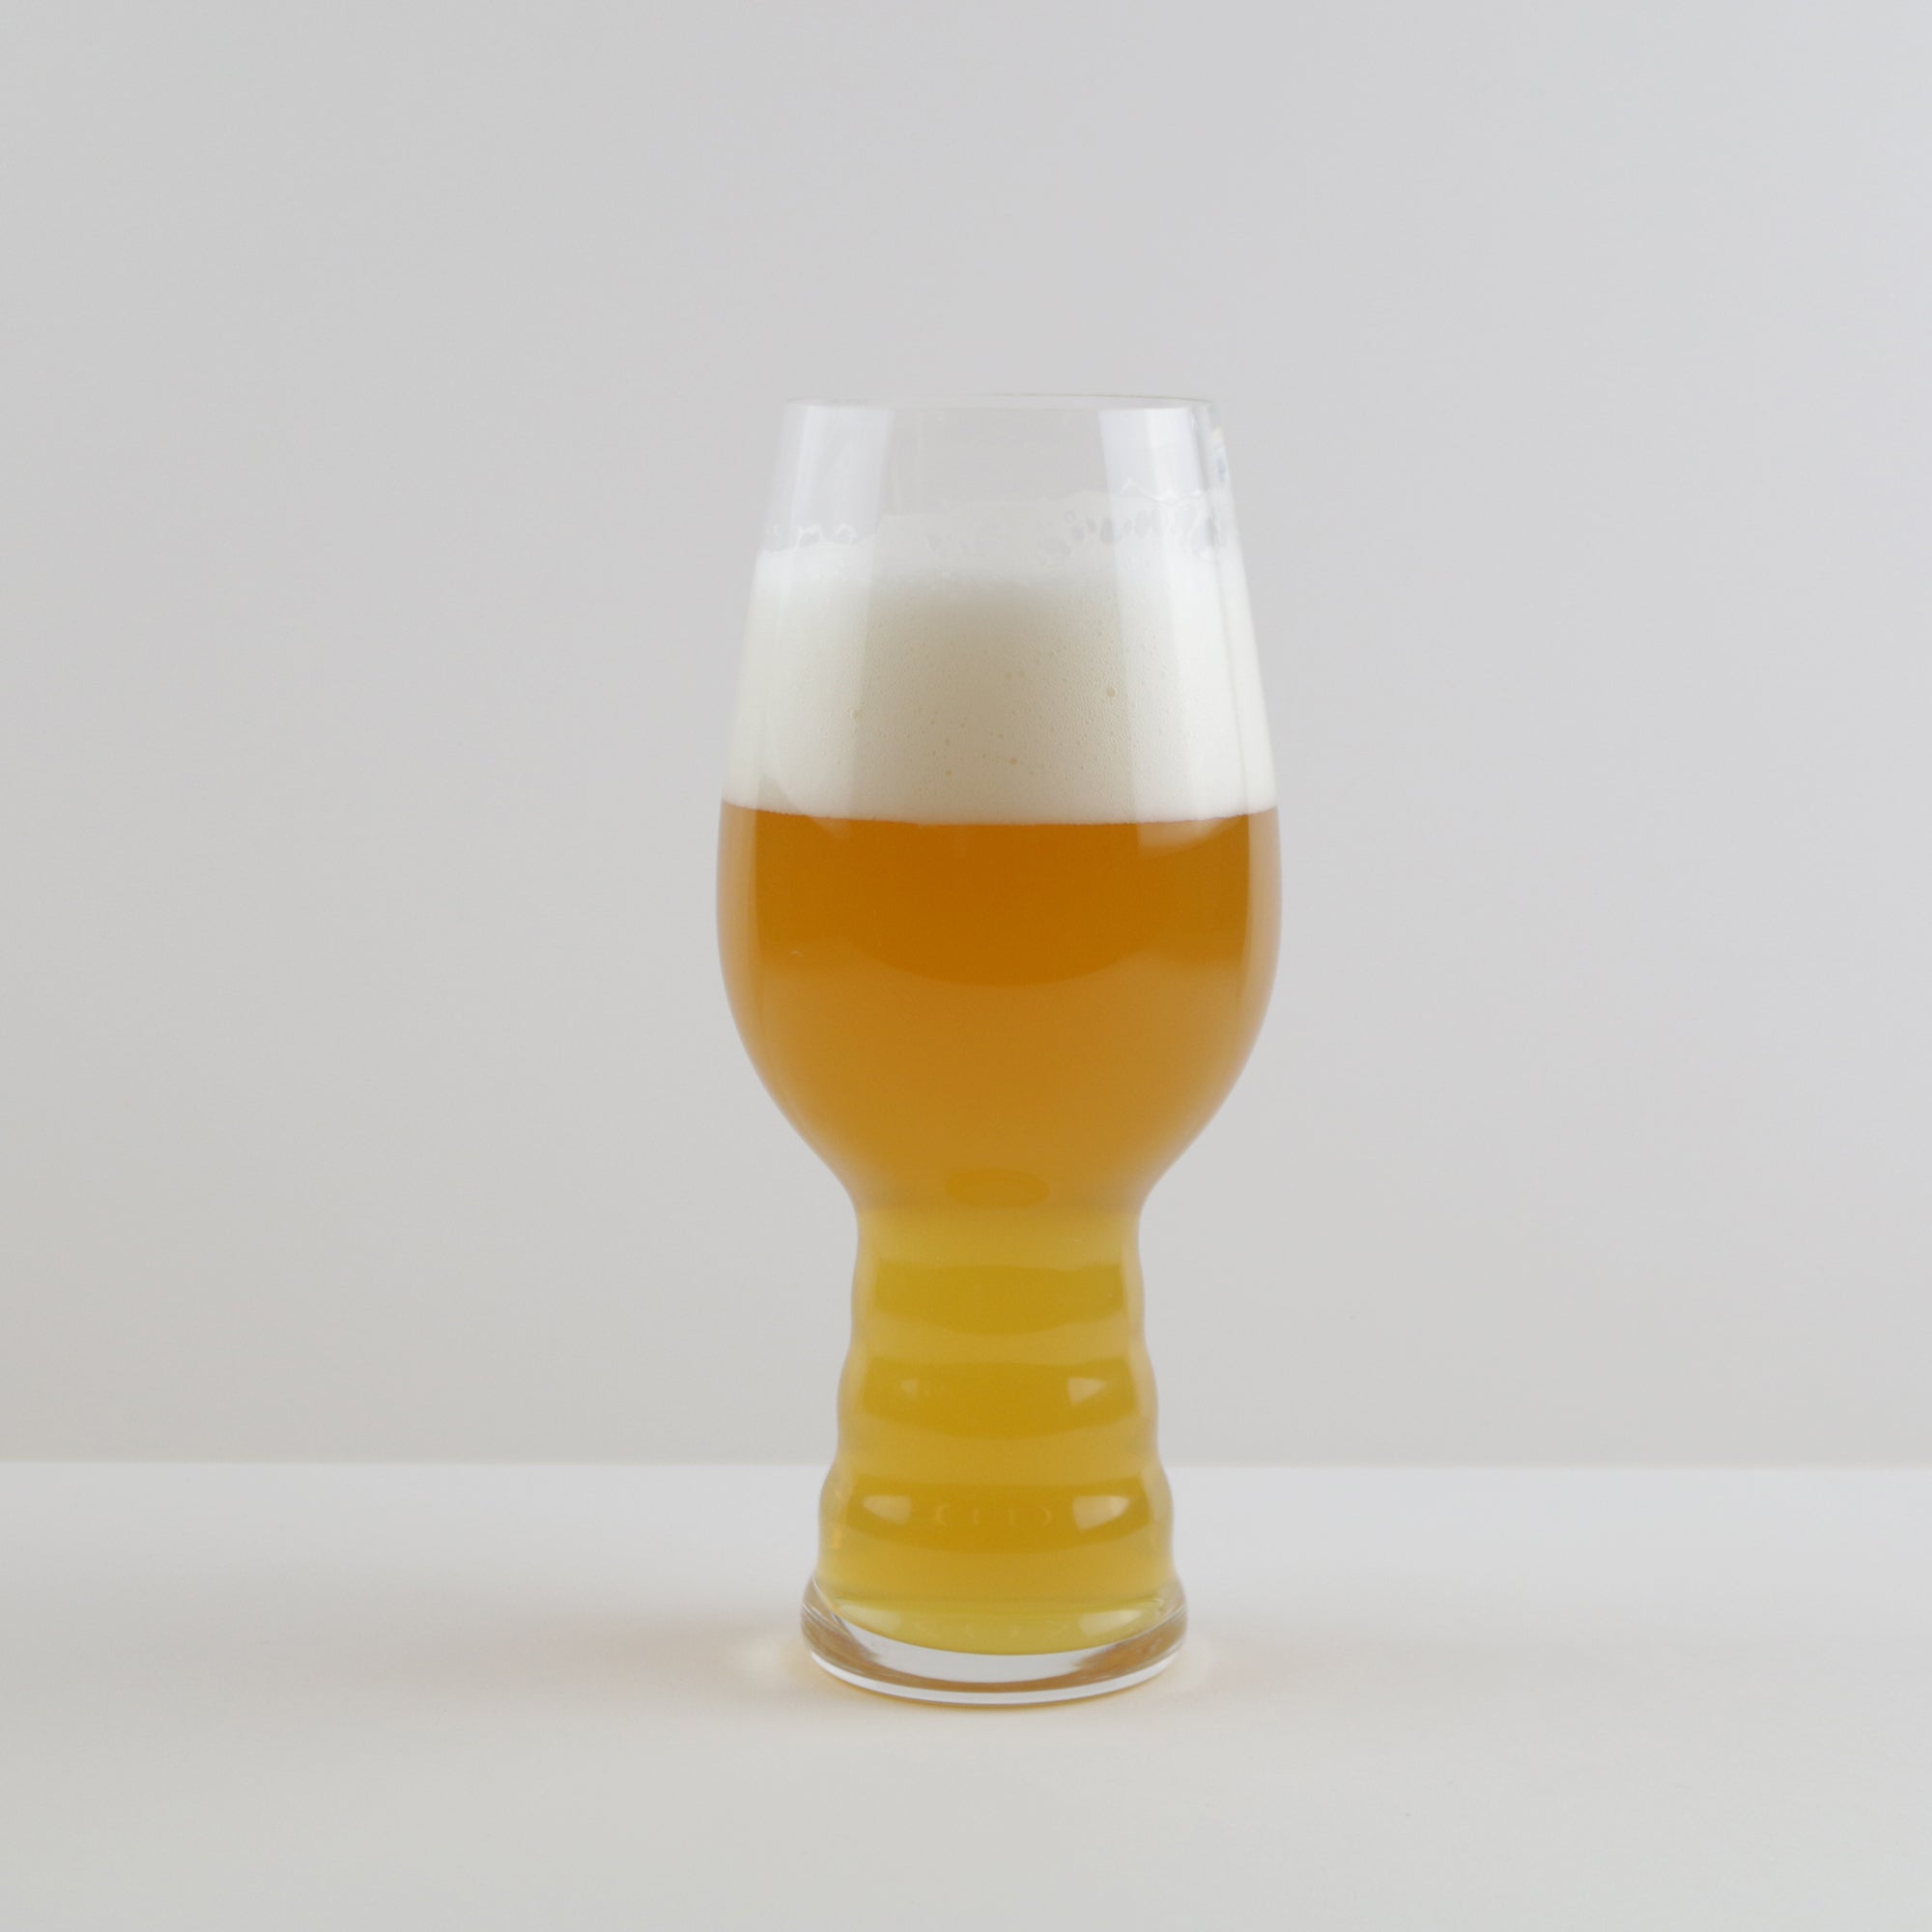 SPIEGELAU Craft Beer Glasses Tasting Kit